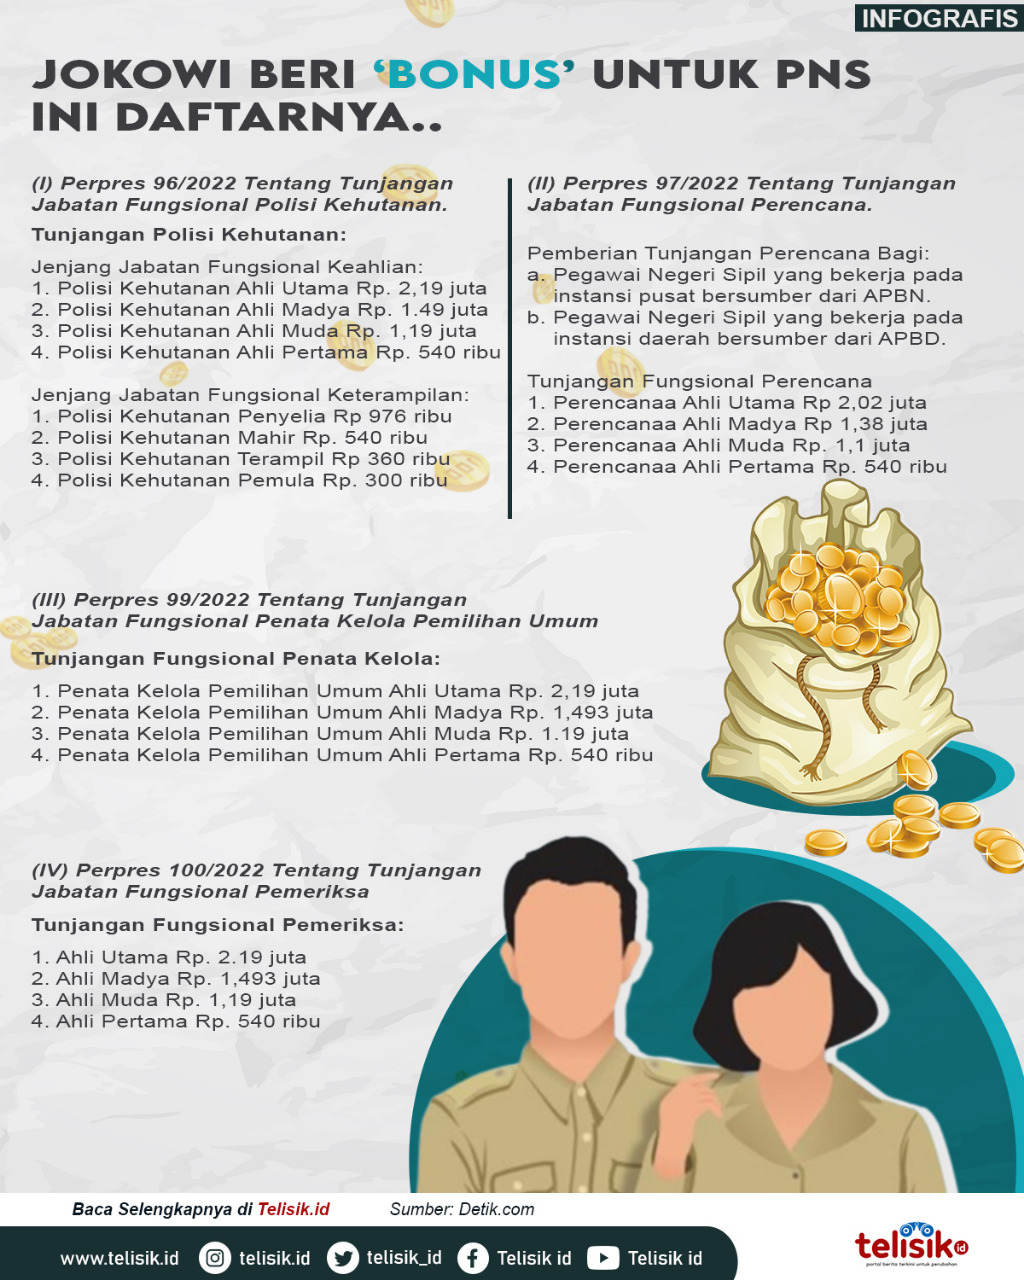 Infografis: Jokowi Beri Bonus Untuk PNS, ini daftarnya